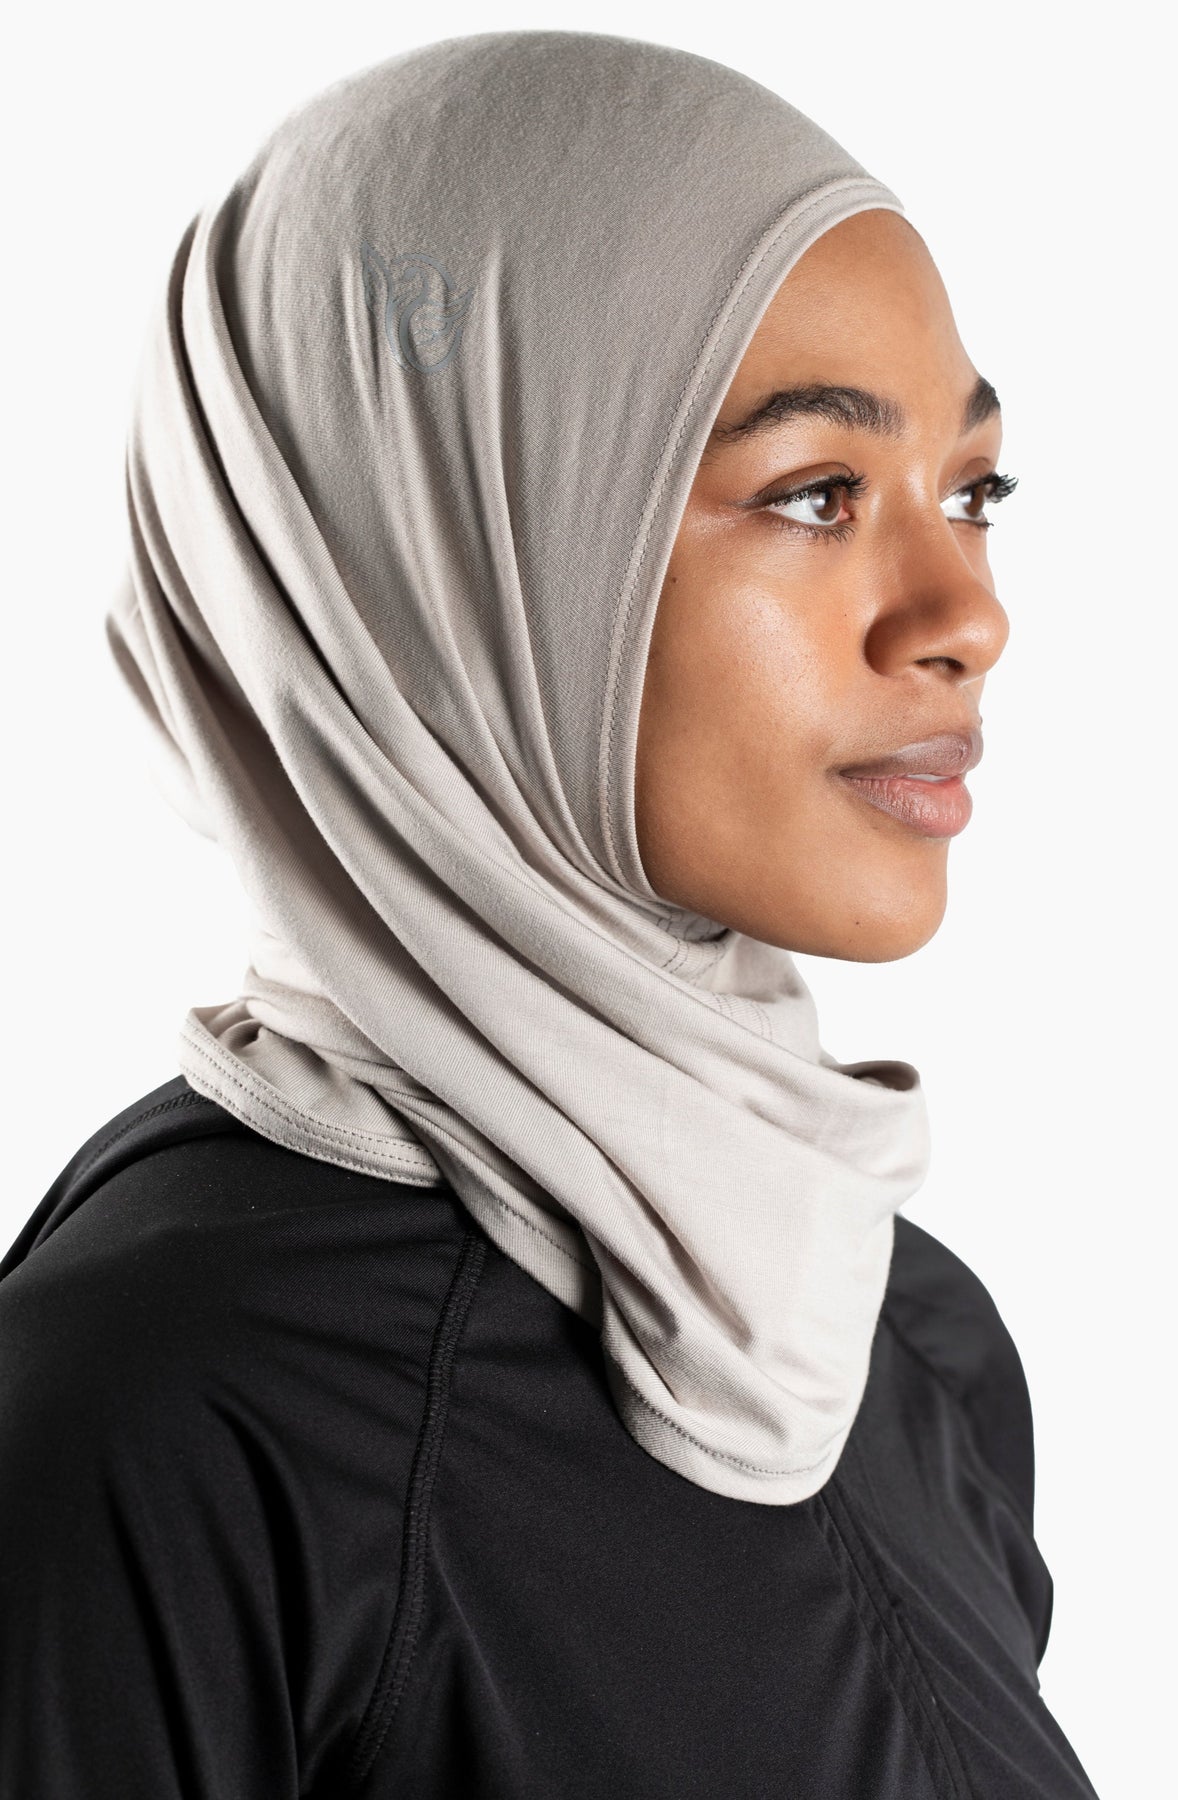 Marwa Fashion Muslim Hijab for Women - Premium Quality Hijab